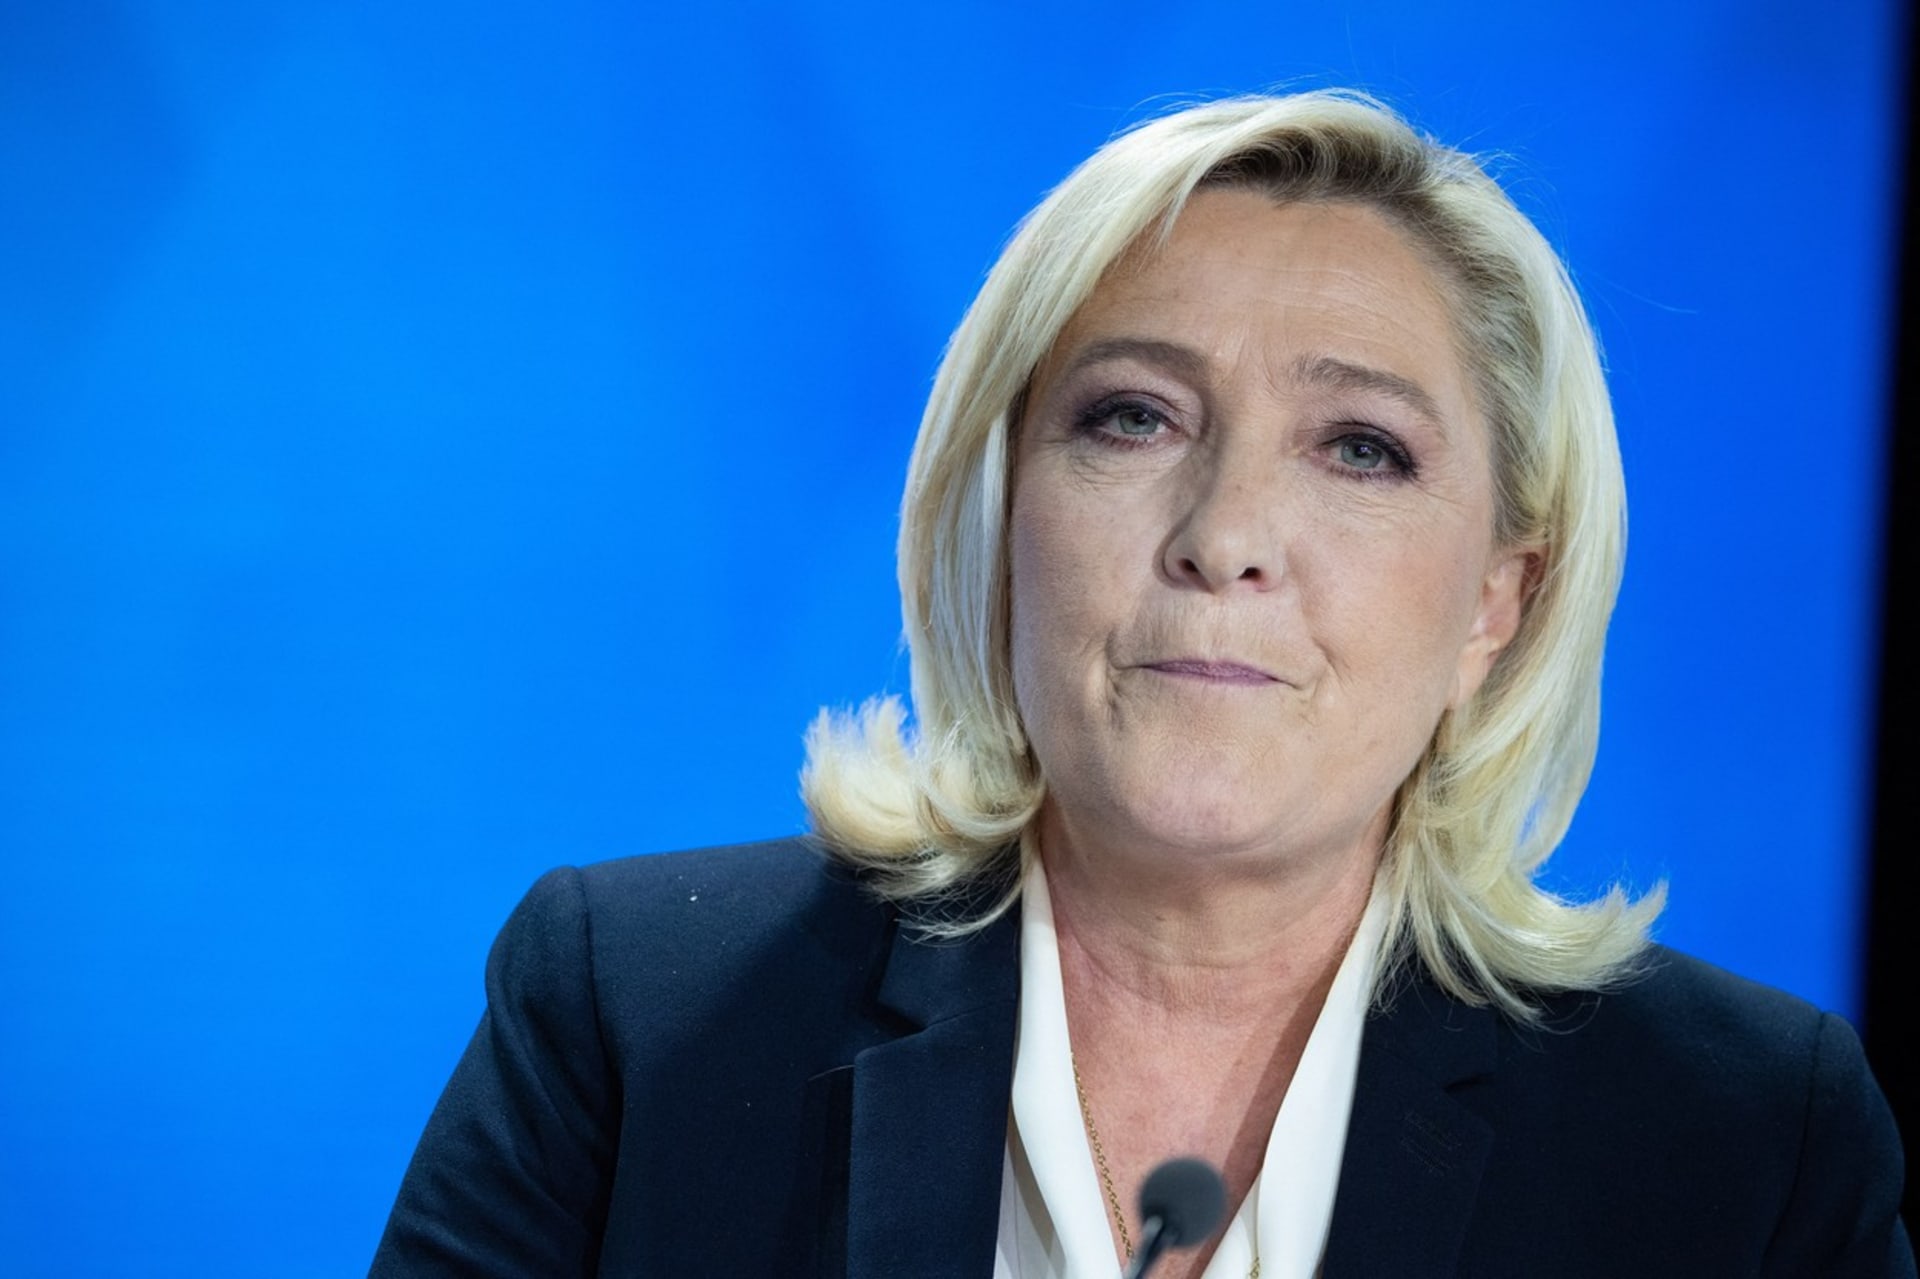 Marine Le Penová získala ve 2. kole francouzských prezidentských voleb kolem 42 procent hlasů. 